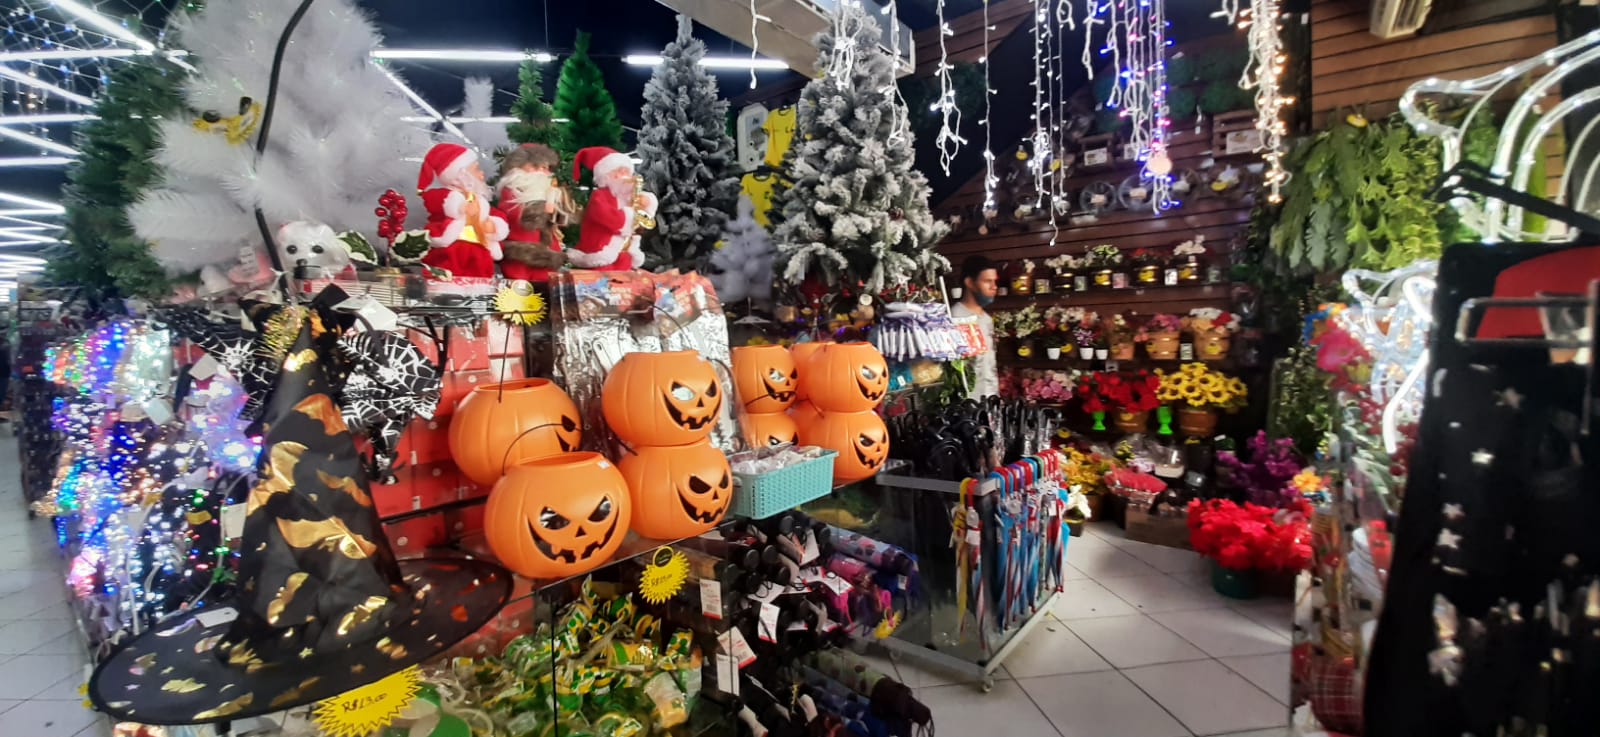 Estabelecimentos comercializam enfeites natalinos em meio a artigos para Halloween e itens verde-amarelos para Copa do Catar